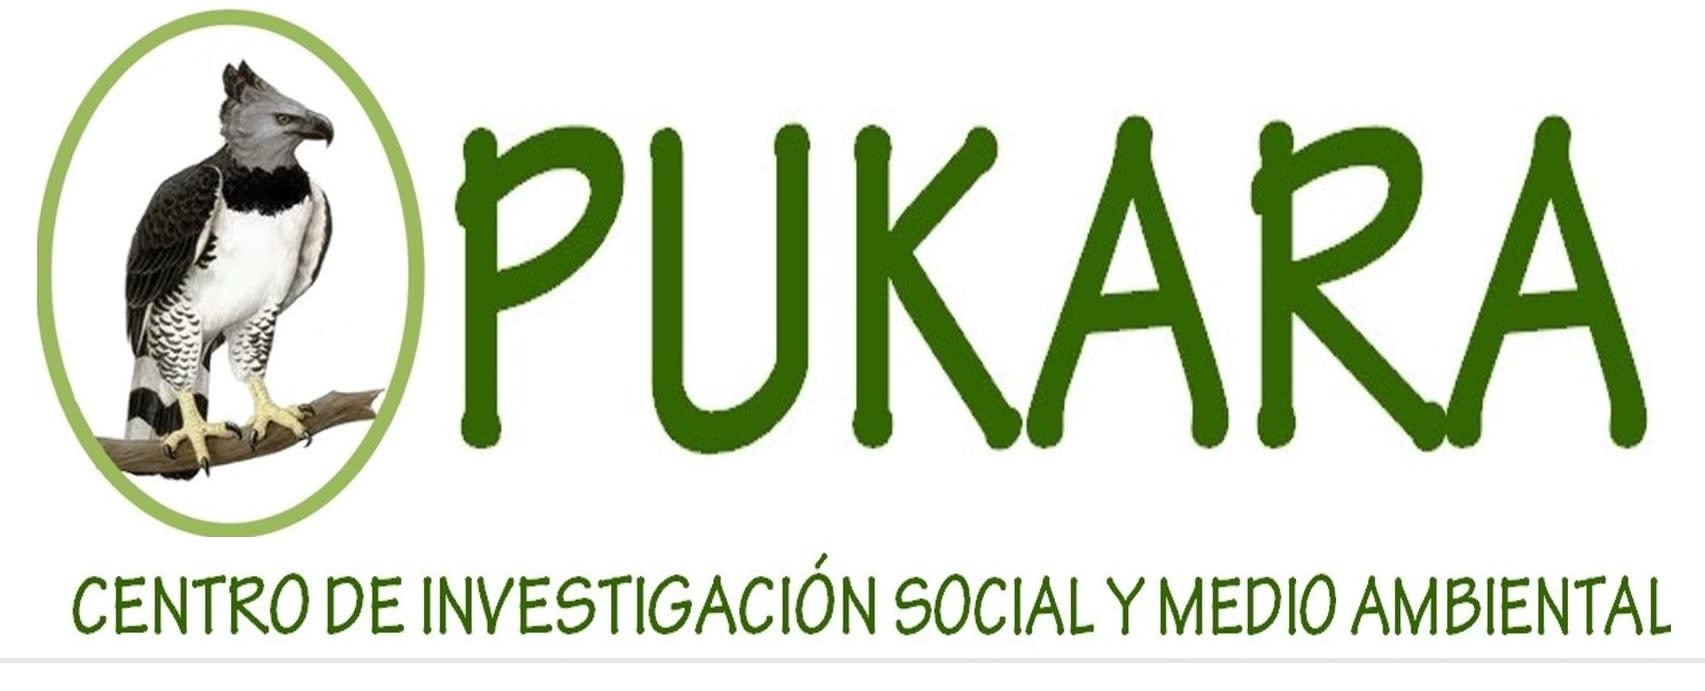 PUKARA - Centro de Investigacion Social y Medioambiental